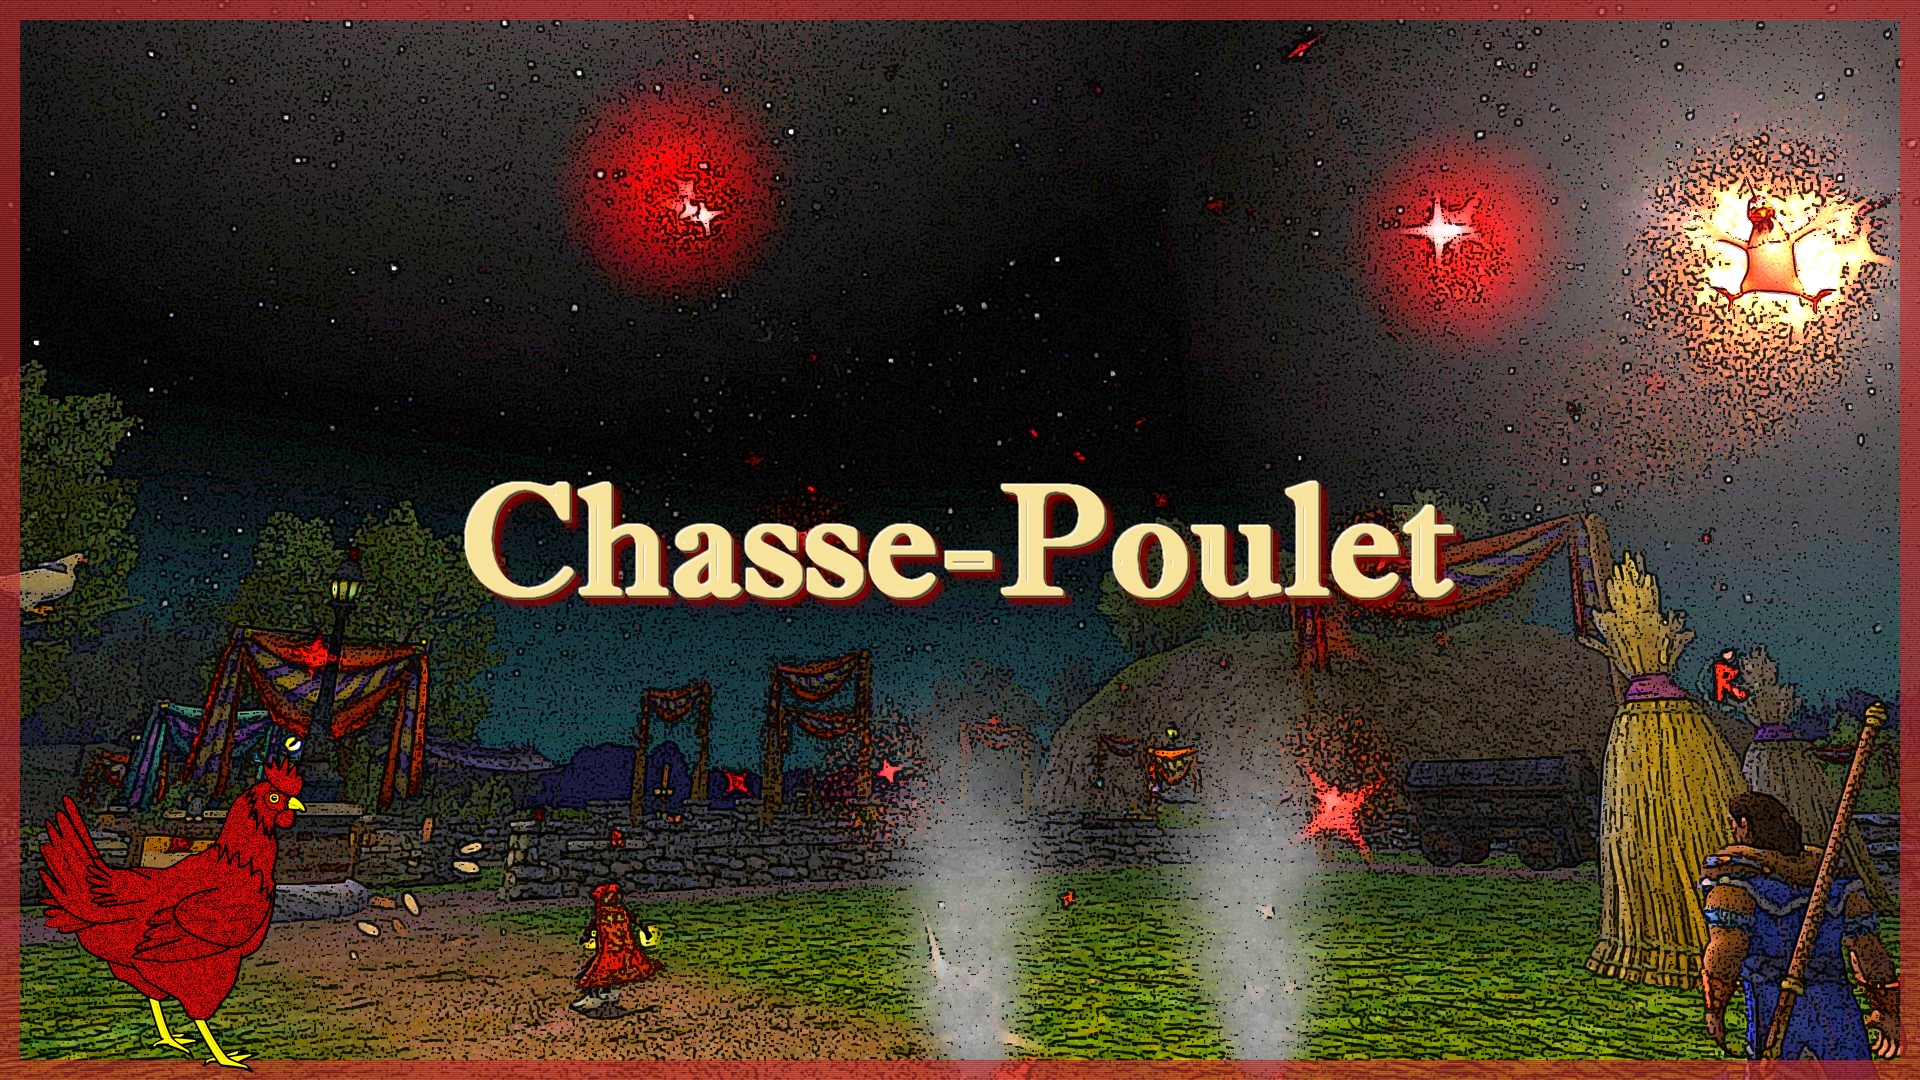 Le Chasse-Poulet est de retour!